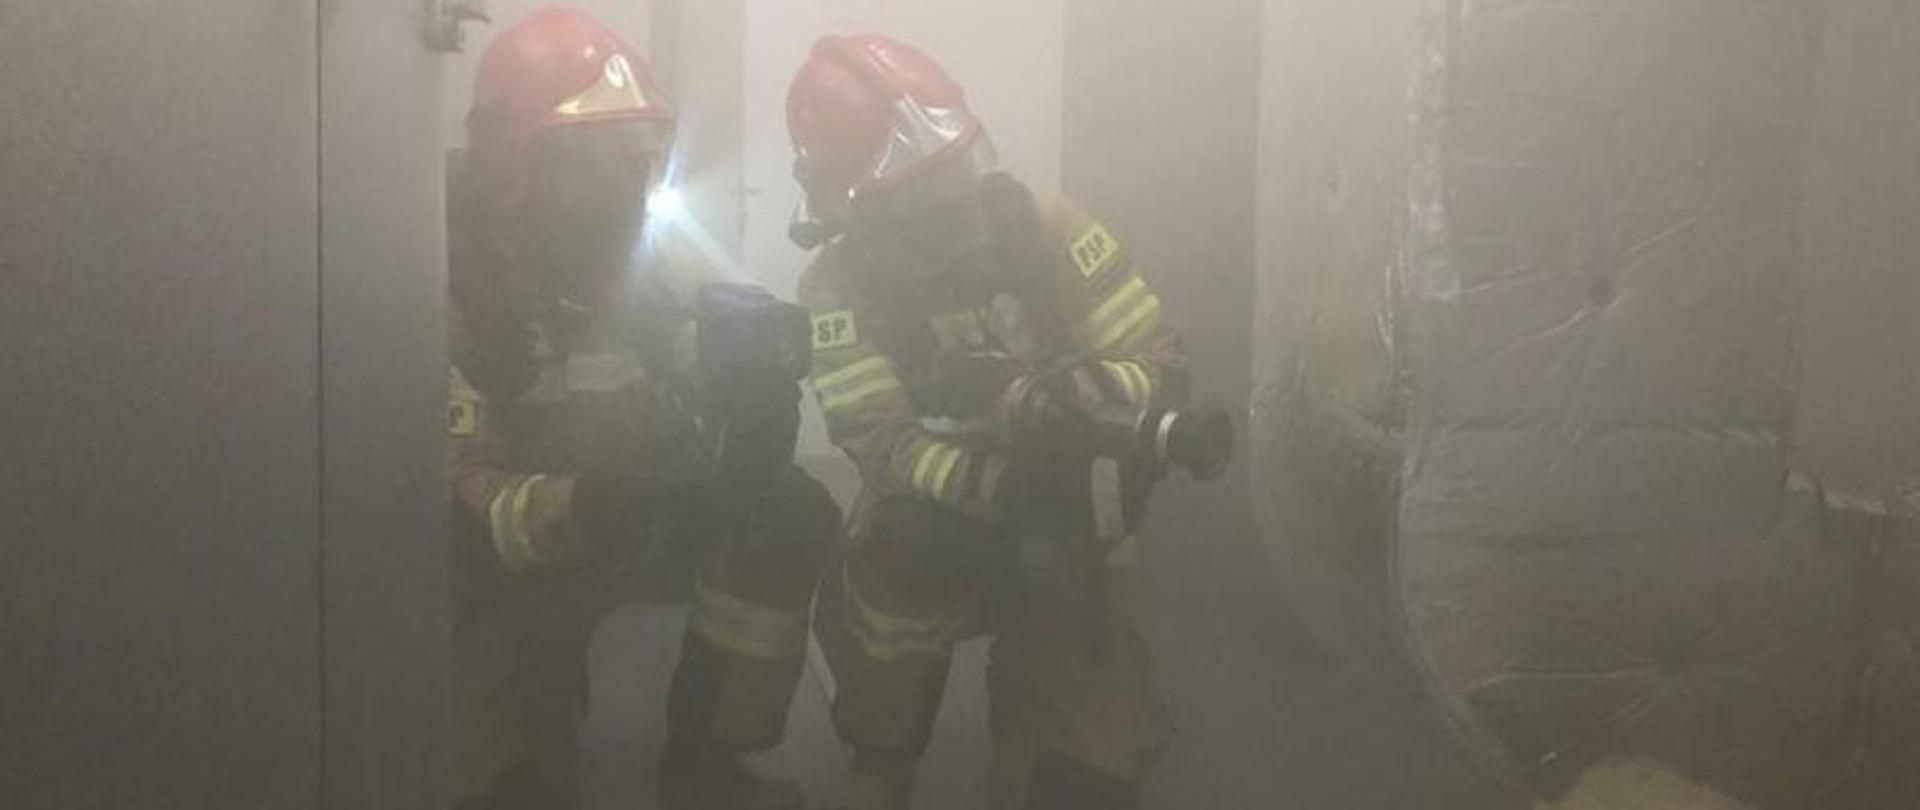 Ratownicy odnajdują źródło ognia i przystępują do gaszenia